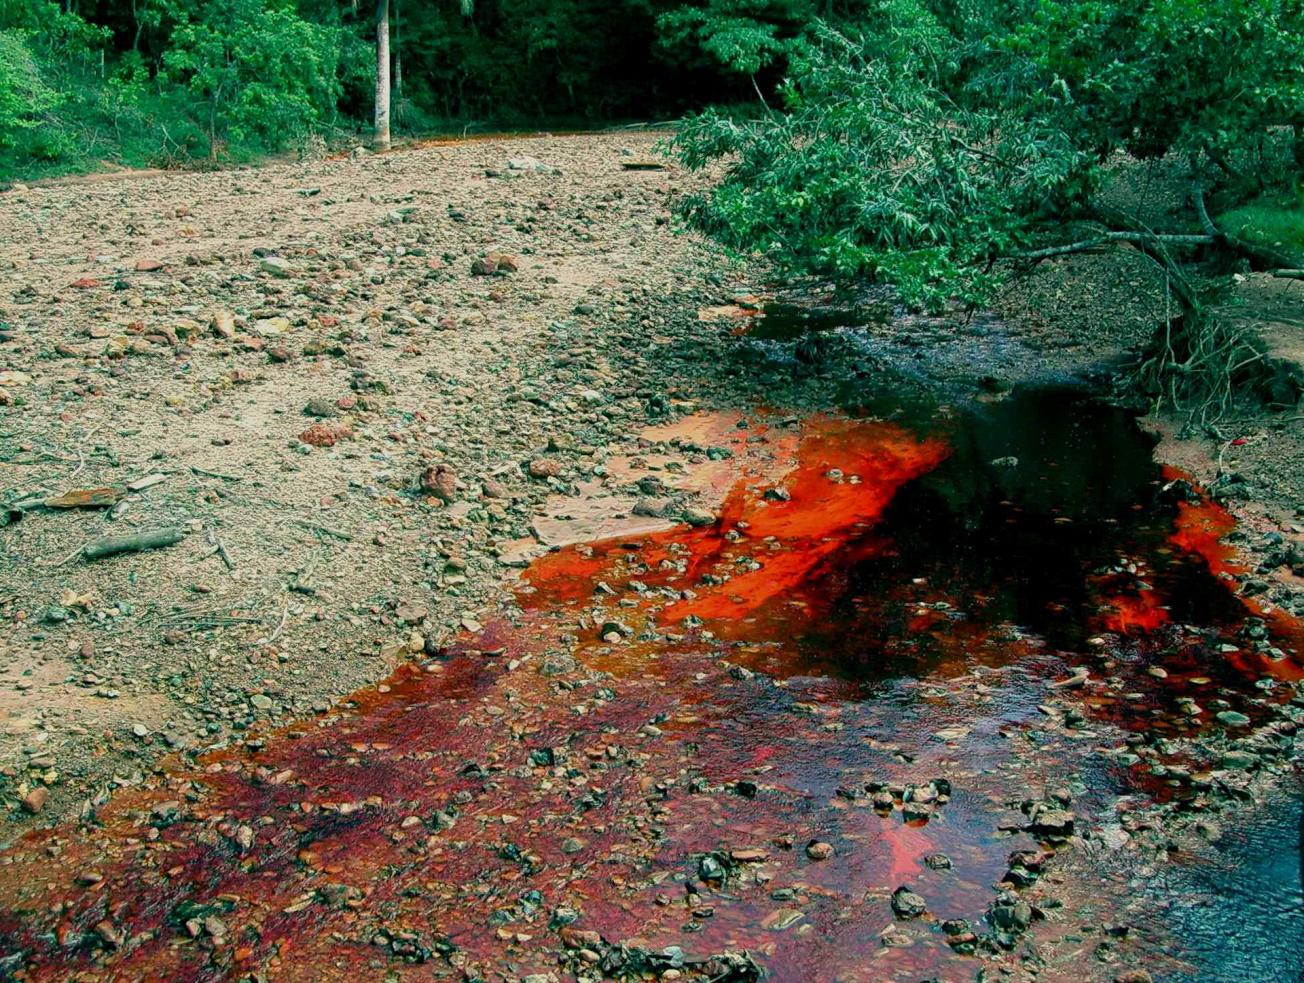  Le Rio de sangre, en République Dominicaine, est contaminé par le drainage acide d'une mine    